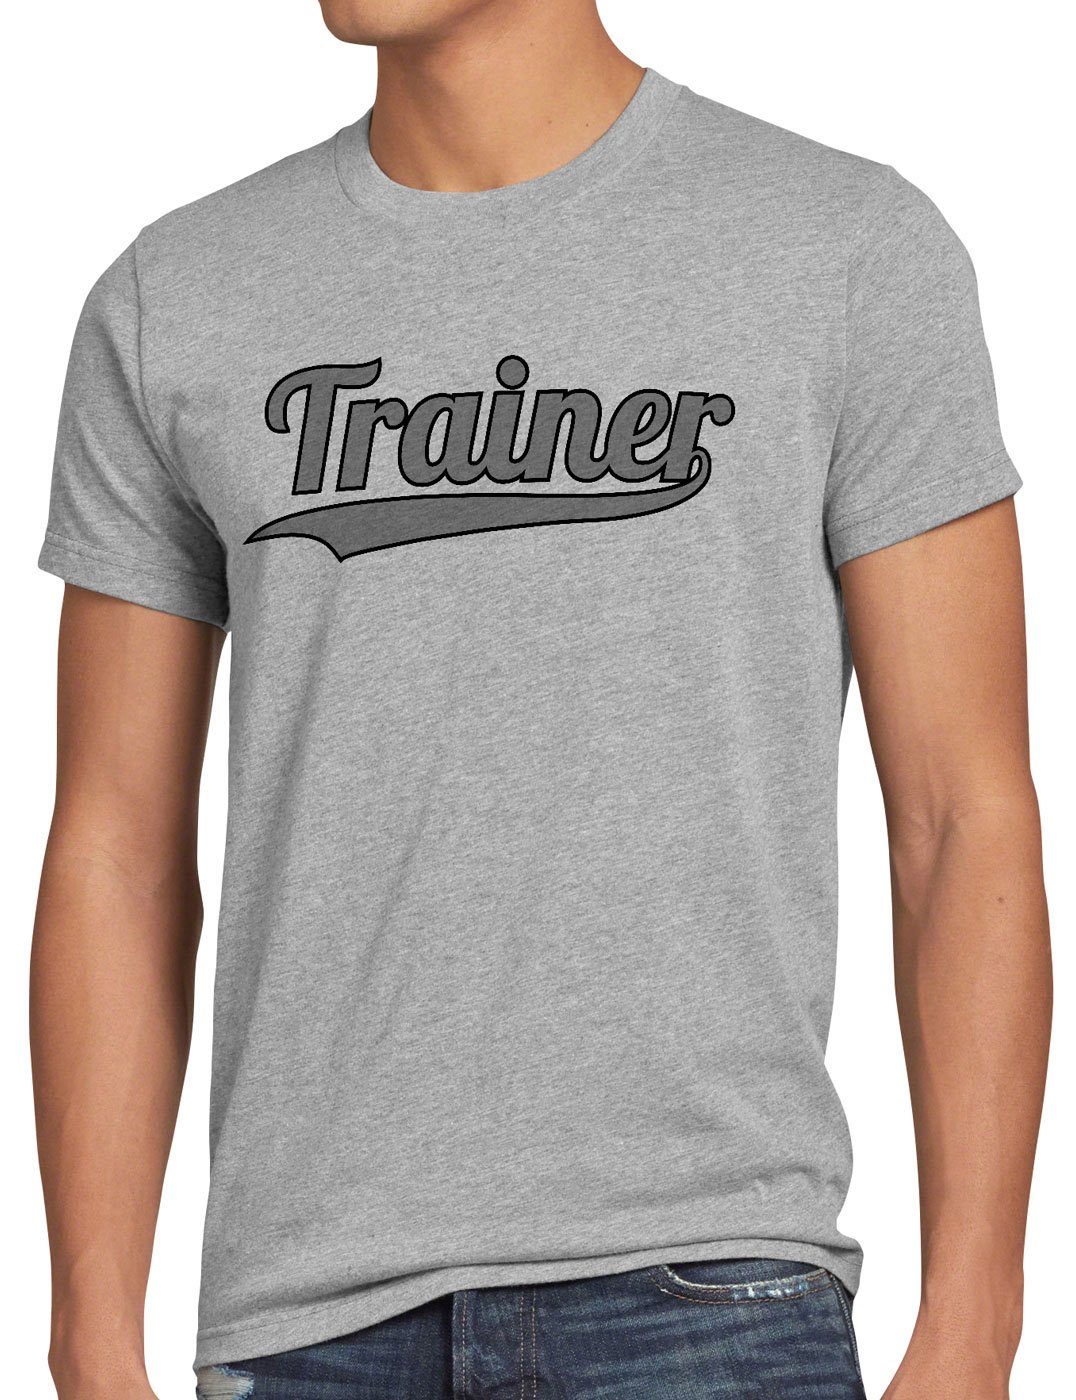 style3 Print-Shirt Herren Fun-shirt Coach grau T-Shirt meliert Sport Spruch-shirt Mannschaft Fussball Trainer